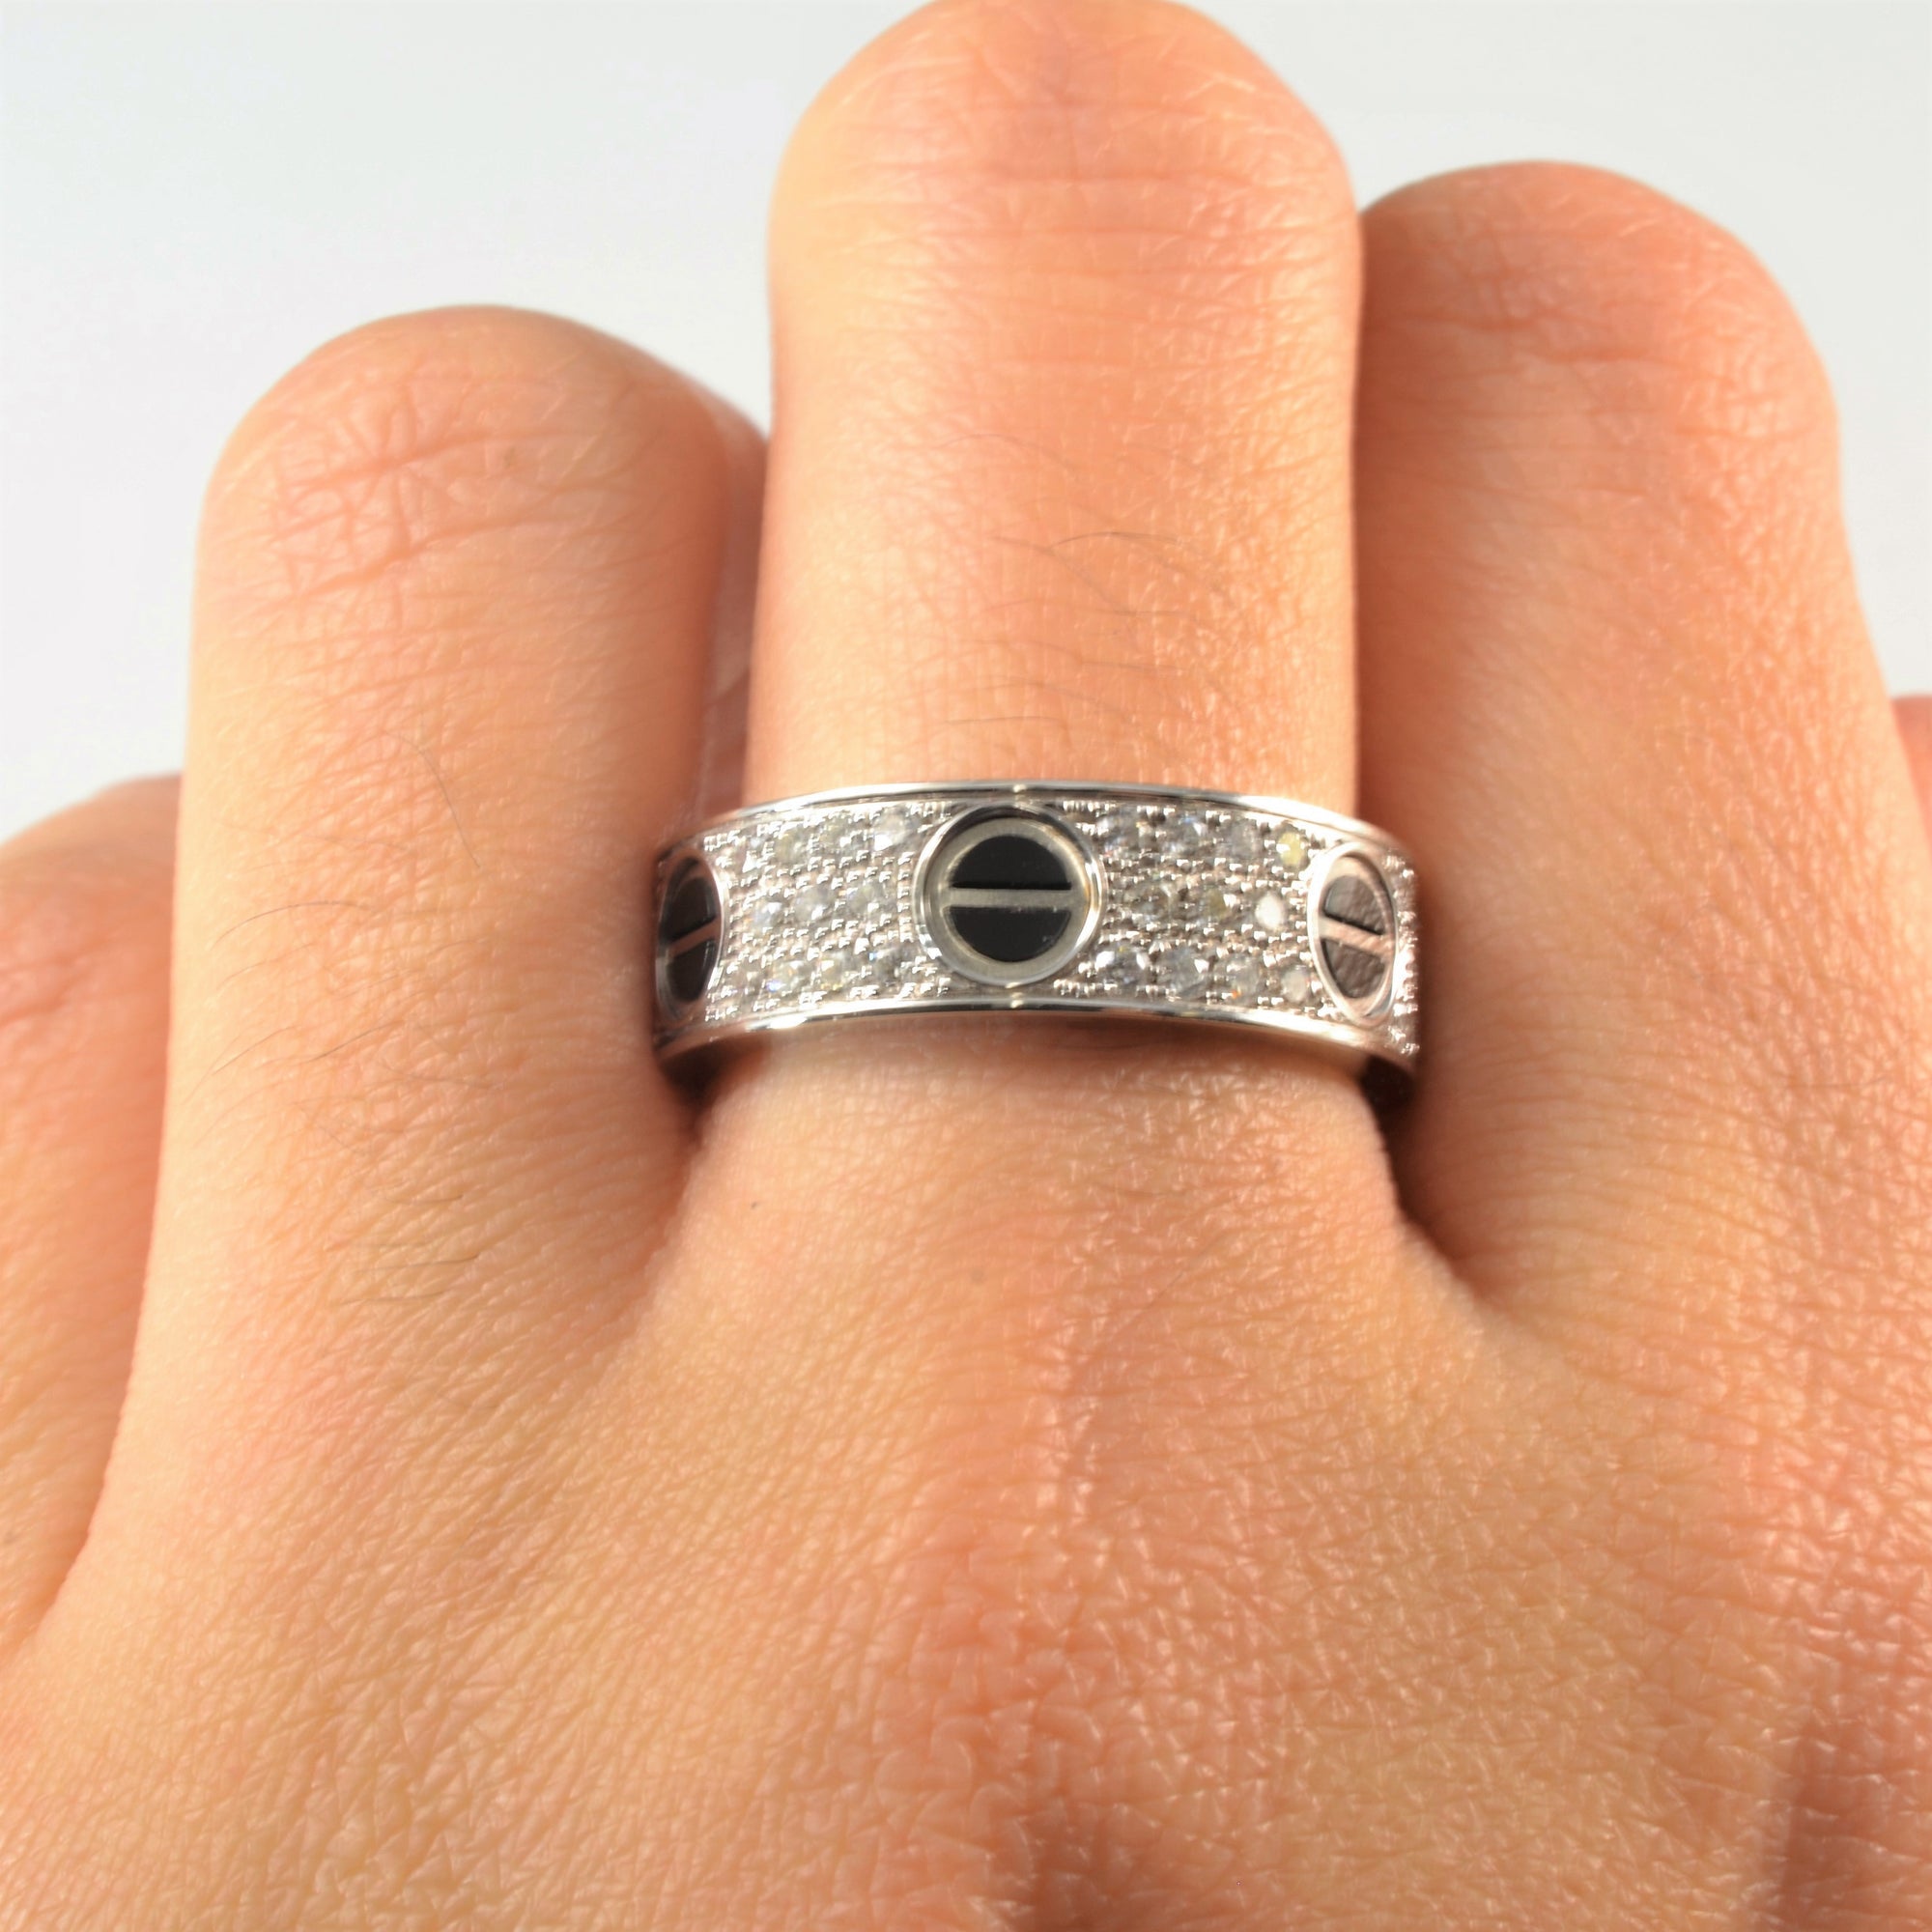 CARTIER Love Ring, Diamond-Paved, Ceramic | 0.74ctw | SZ 8.25 |